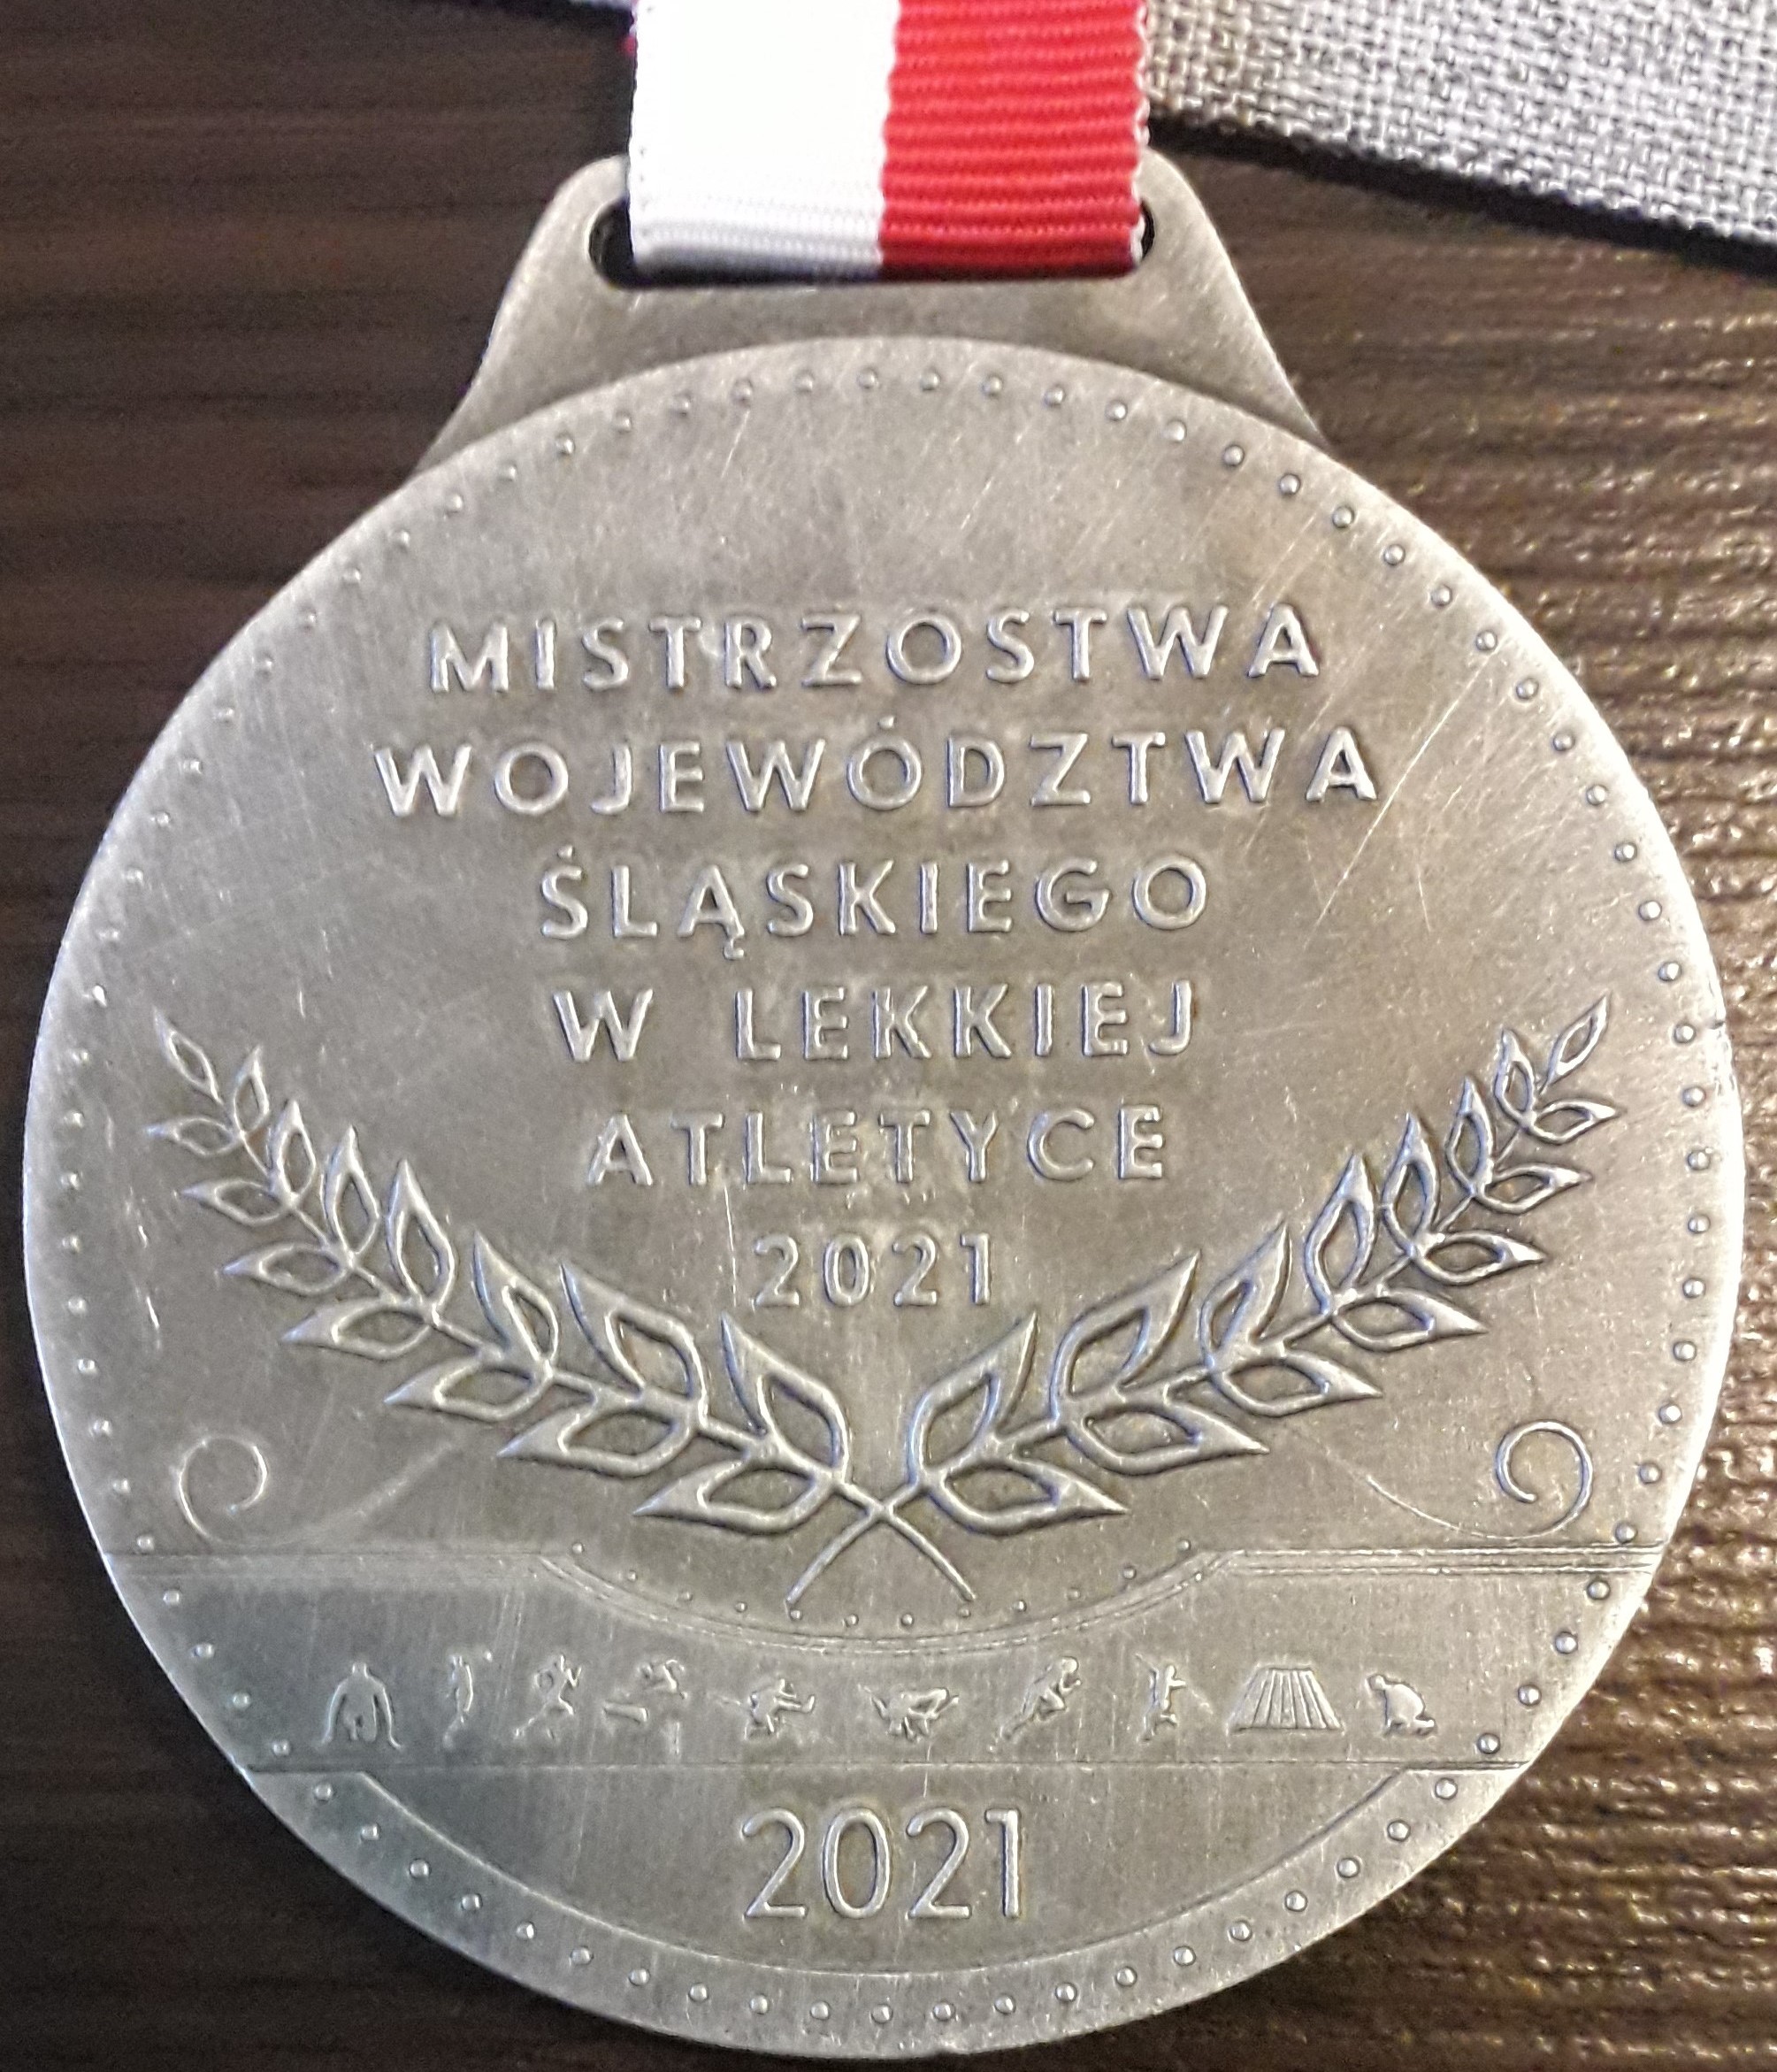 Srebrny medal z wygrawerowaną nazwą zawodów Mistrzostw Województwa Śląskiego w Lekkiej Atletyce.